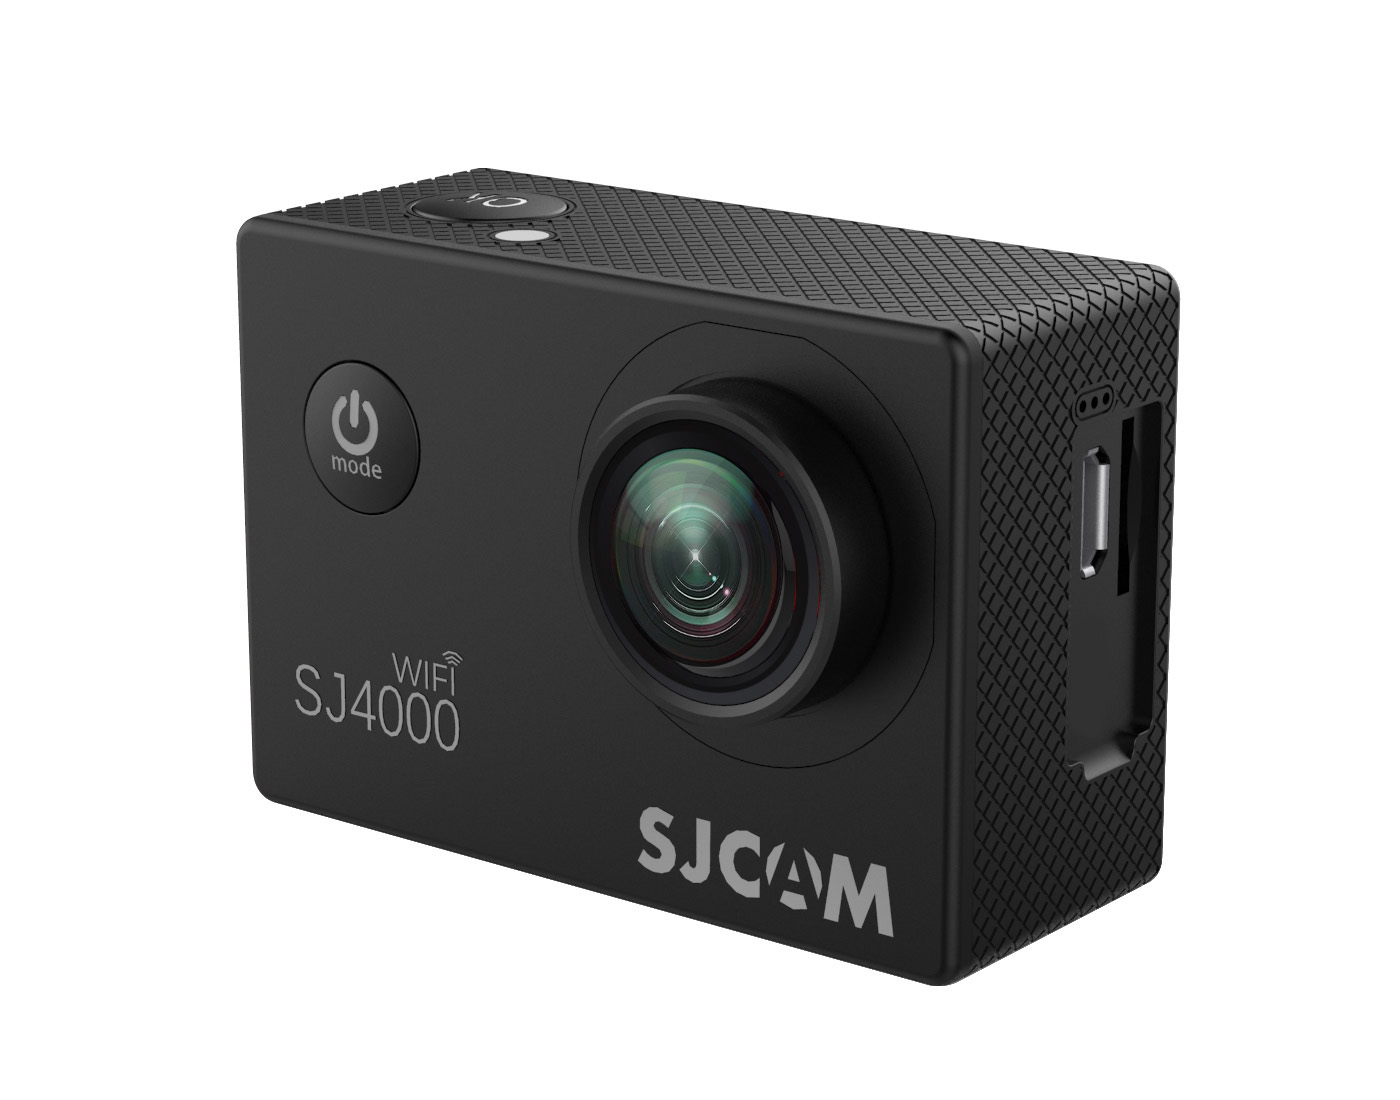 ภาพอธิบายเพิ่มเติมของ SJ CAM  SJ4000 Air กล้องแอคชั่น(4K)